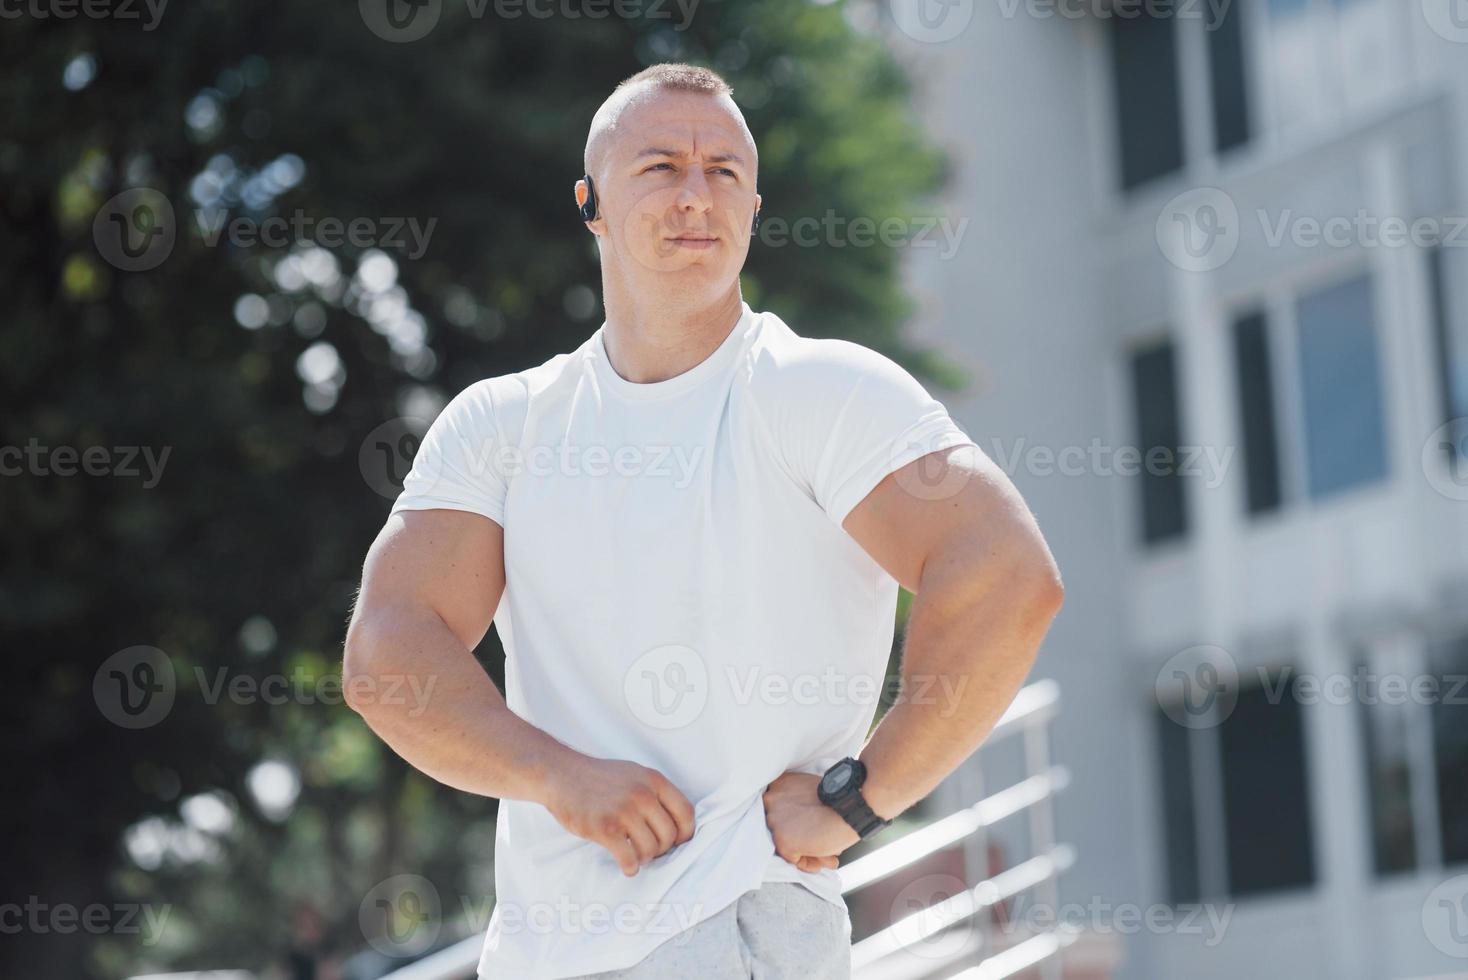 en stilig fitnessman i sportkläder, stretchar medan han förbereder sig för seriös träning i den moderna staden foto